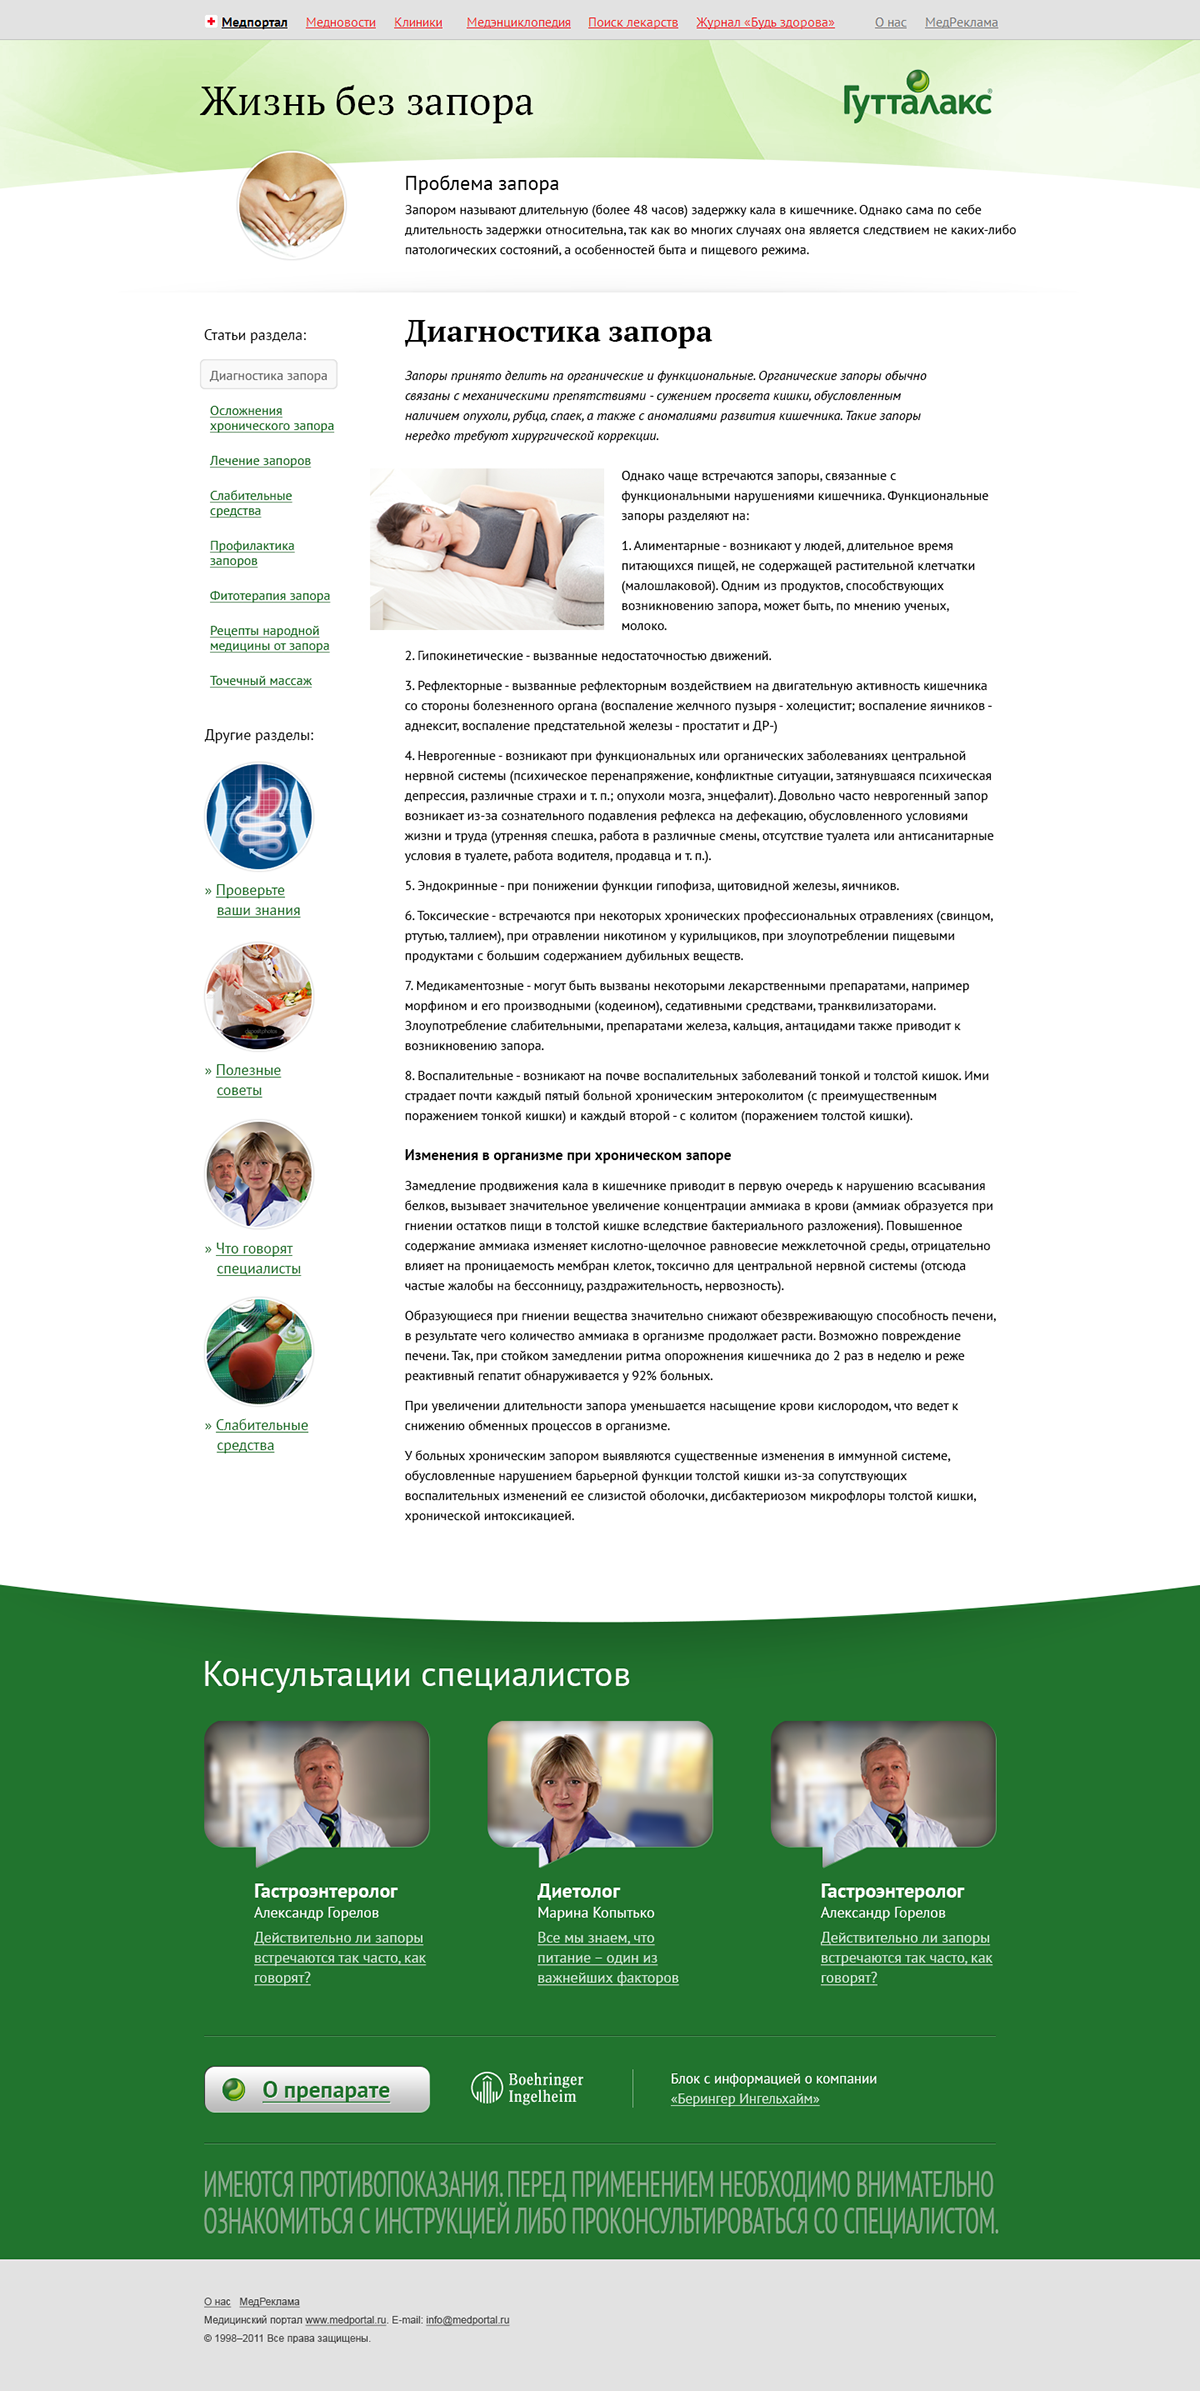 Website advertisement medicine